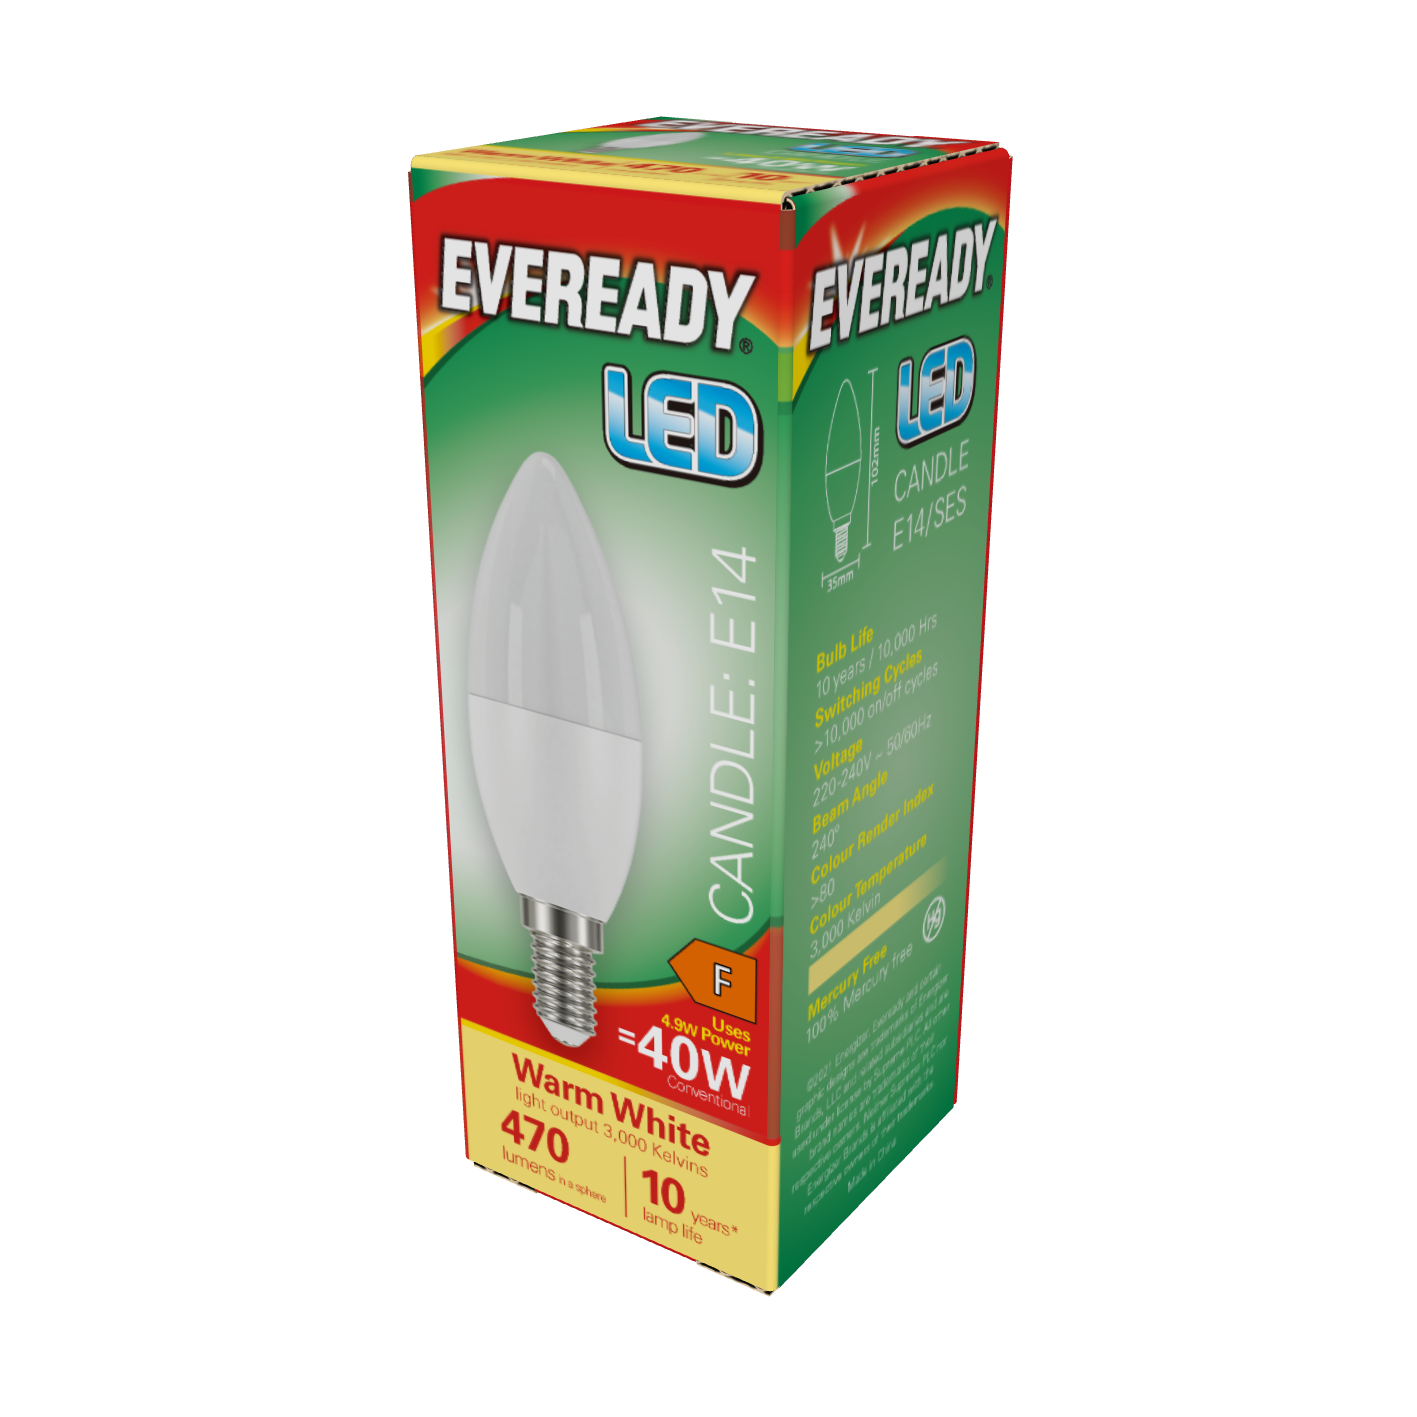 Vela LED Eveready E14 (SES) 470lm 4,9W 3.000K (Blanco Cálido), Caja de 1